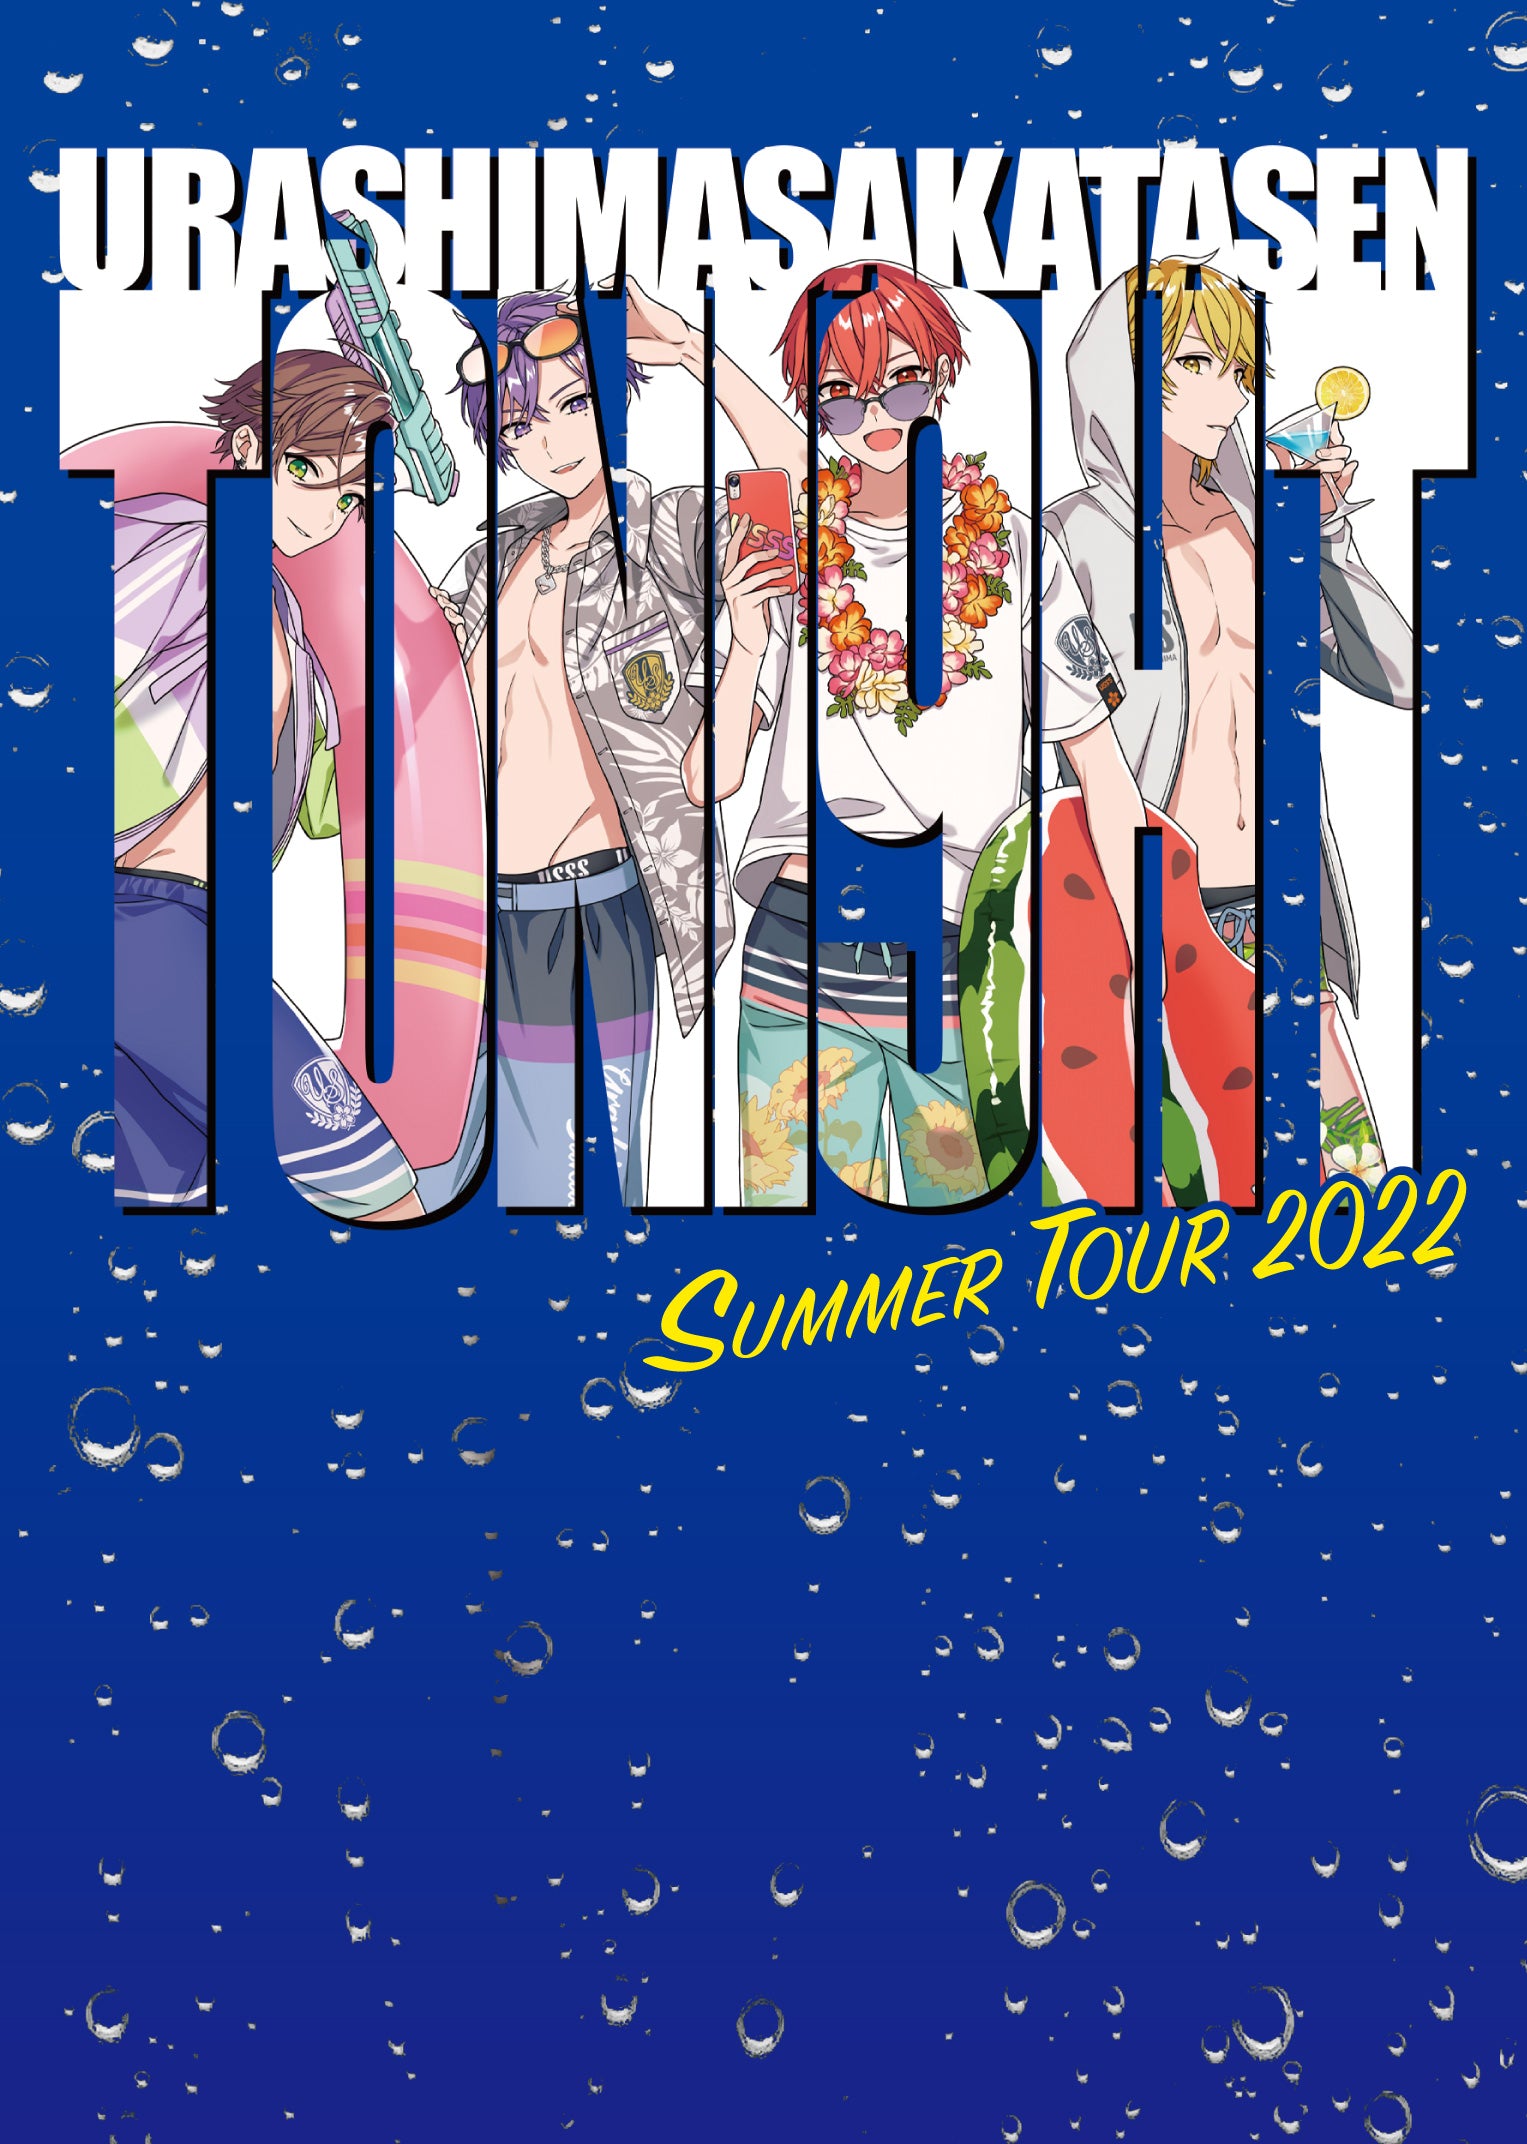 DVD】「浦島坂田船 SUMMER TOUR 2022 Toni9ht」ライブDVD – 浦島坂田船 ...